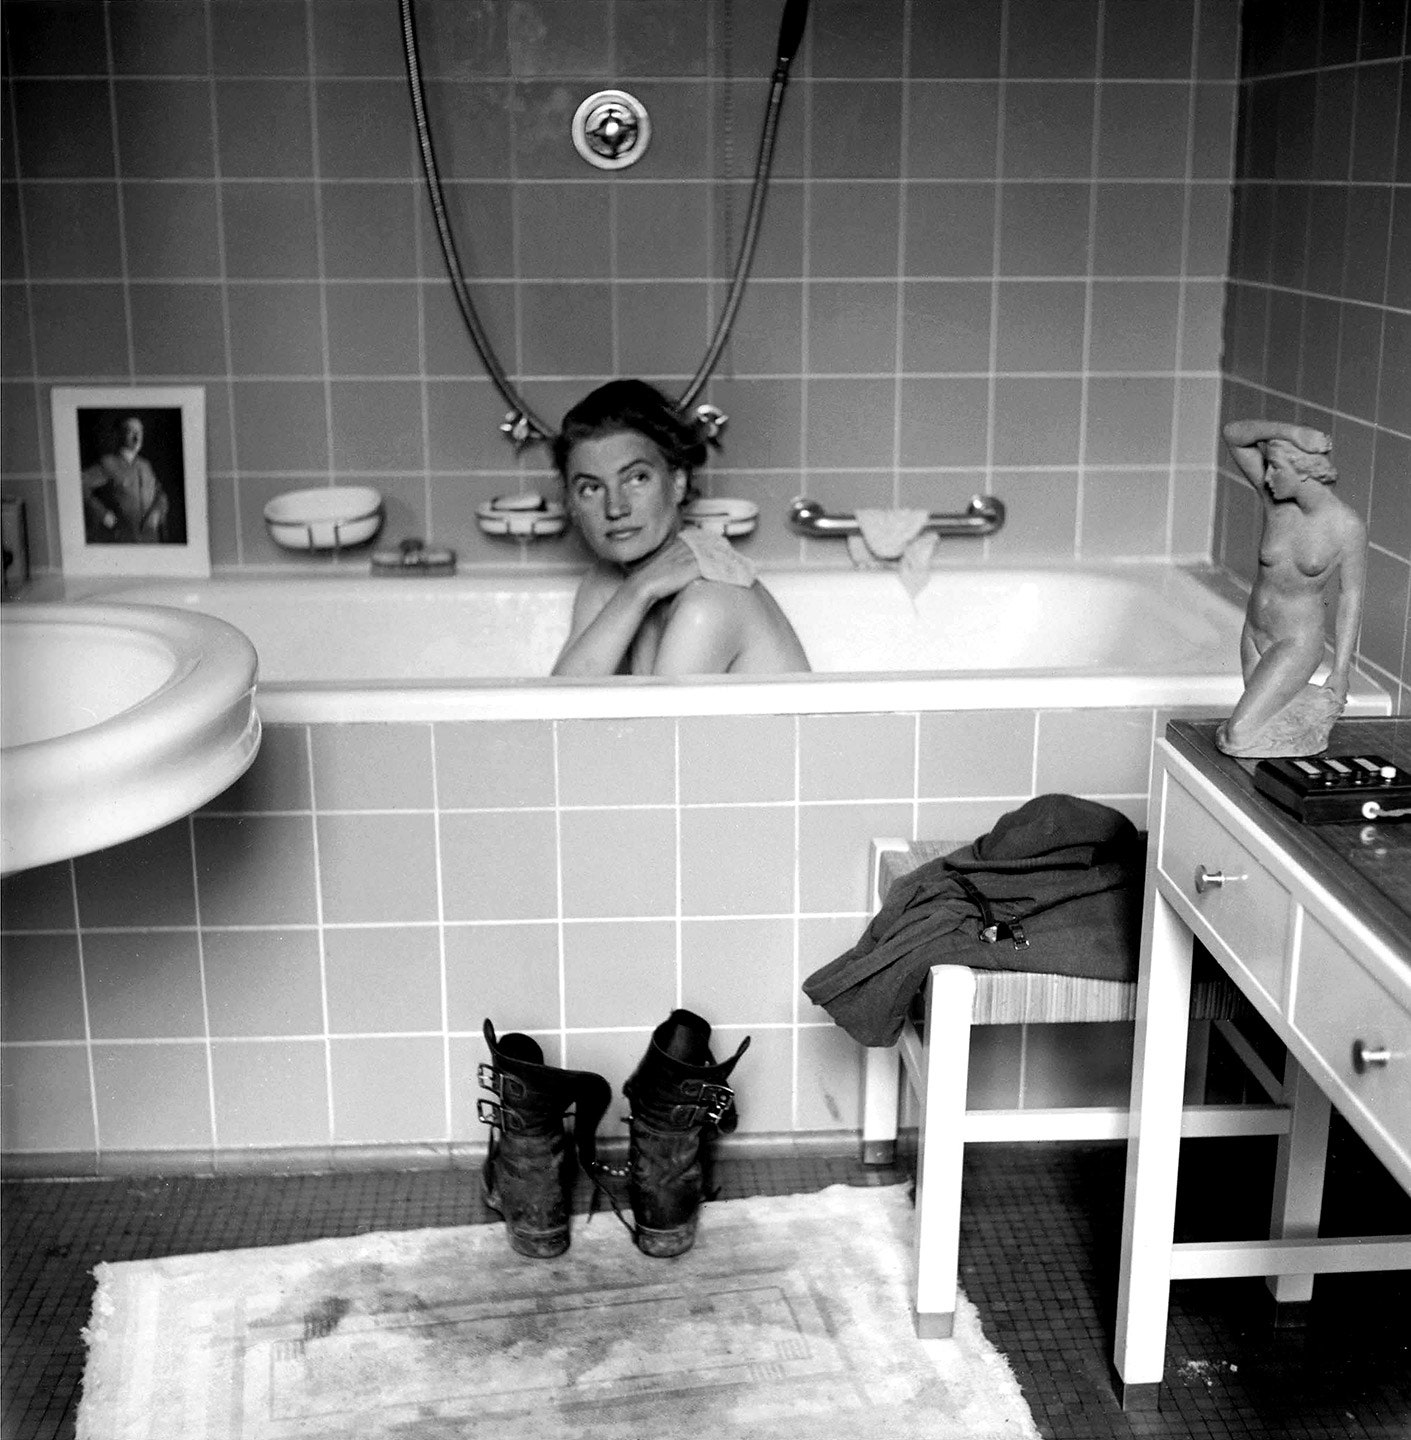 Fotó: David E Scherman: Lee Miller Hitler fürdőkádjában, 1945. április 30. © David E Scherman<br /><br />A kép aznap készült, amikor Hitler öngyilkos lett.  A képet Miller partnere David E. Scherman, a LIFE magazin fotóriportere készítette, és van egy olyan verzió is, ahol ő ül a kádban.